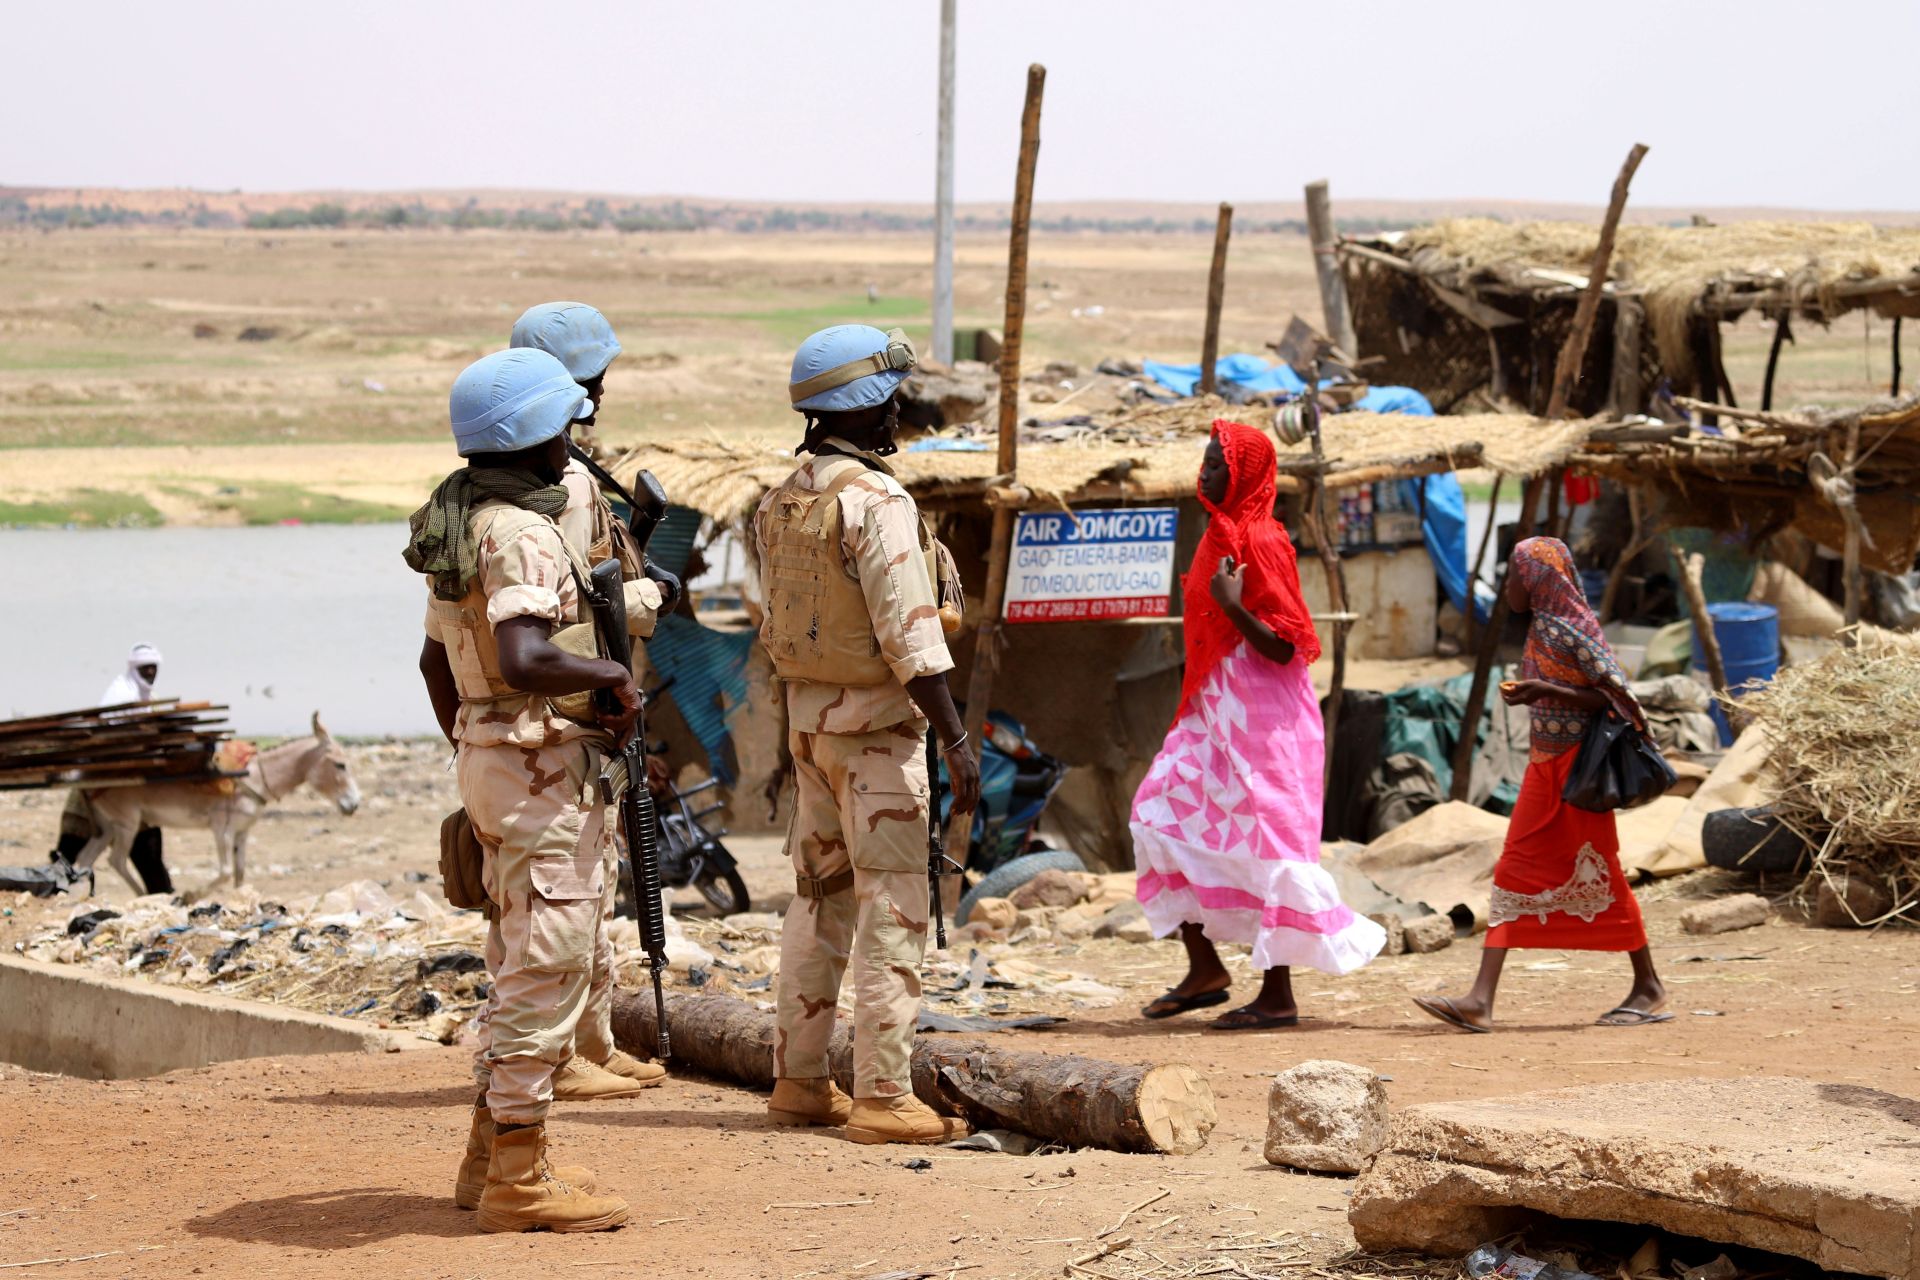 The UN’s Mission in Mali Is on Tenterhooks